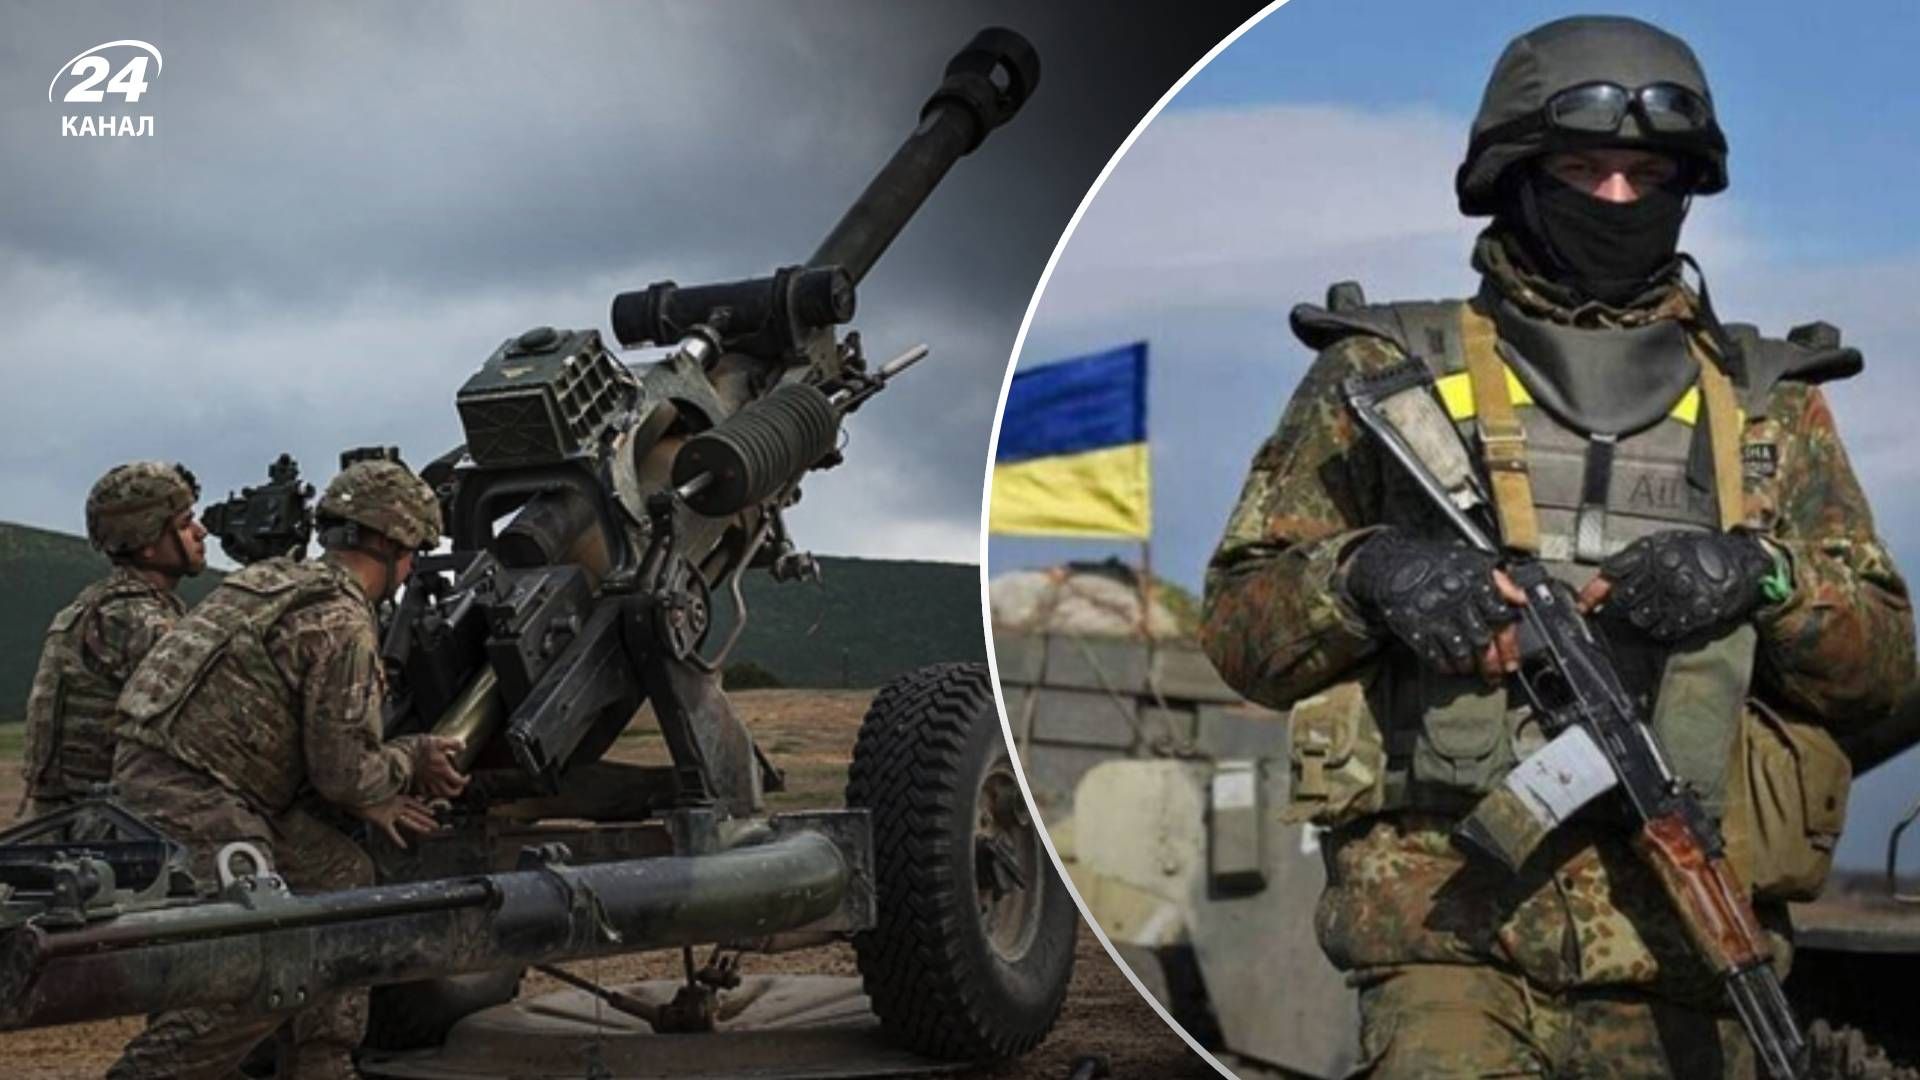 Контрбатарейна боротьба - як українська артилерія успішно полює за російською